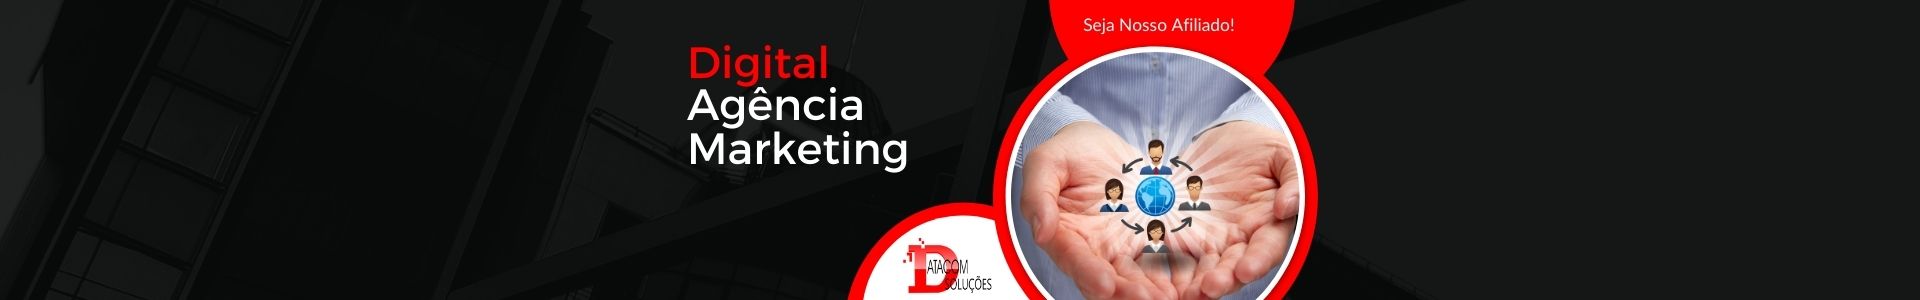 Agência Marketing digital afiliados